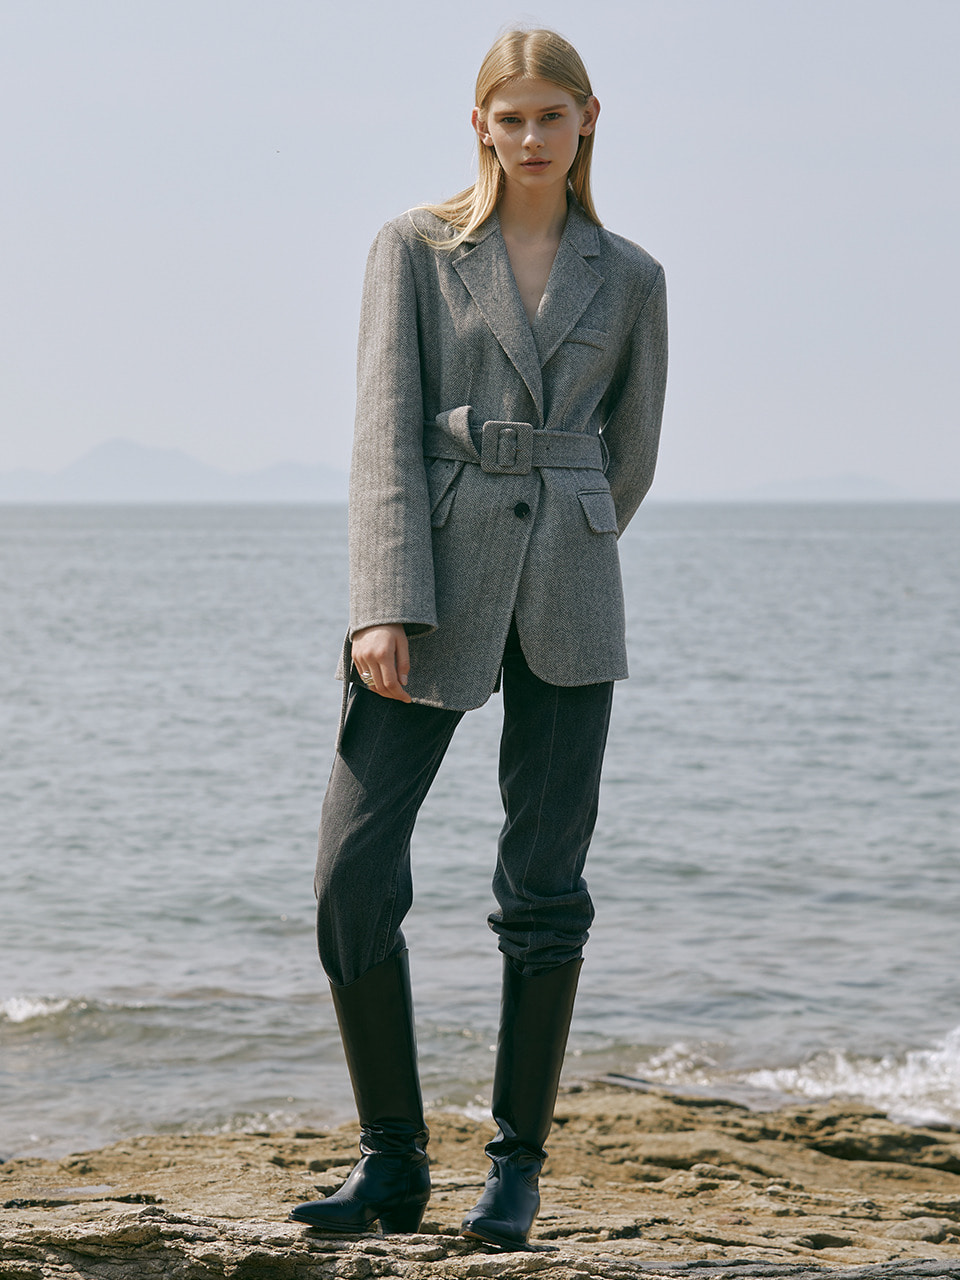 [Last 2장]Premium handmade wool asymmetrical belted jacket in herringbone gray